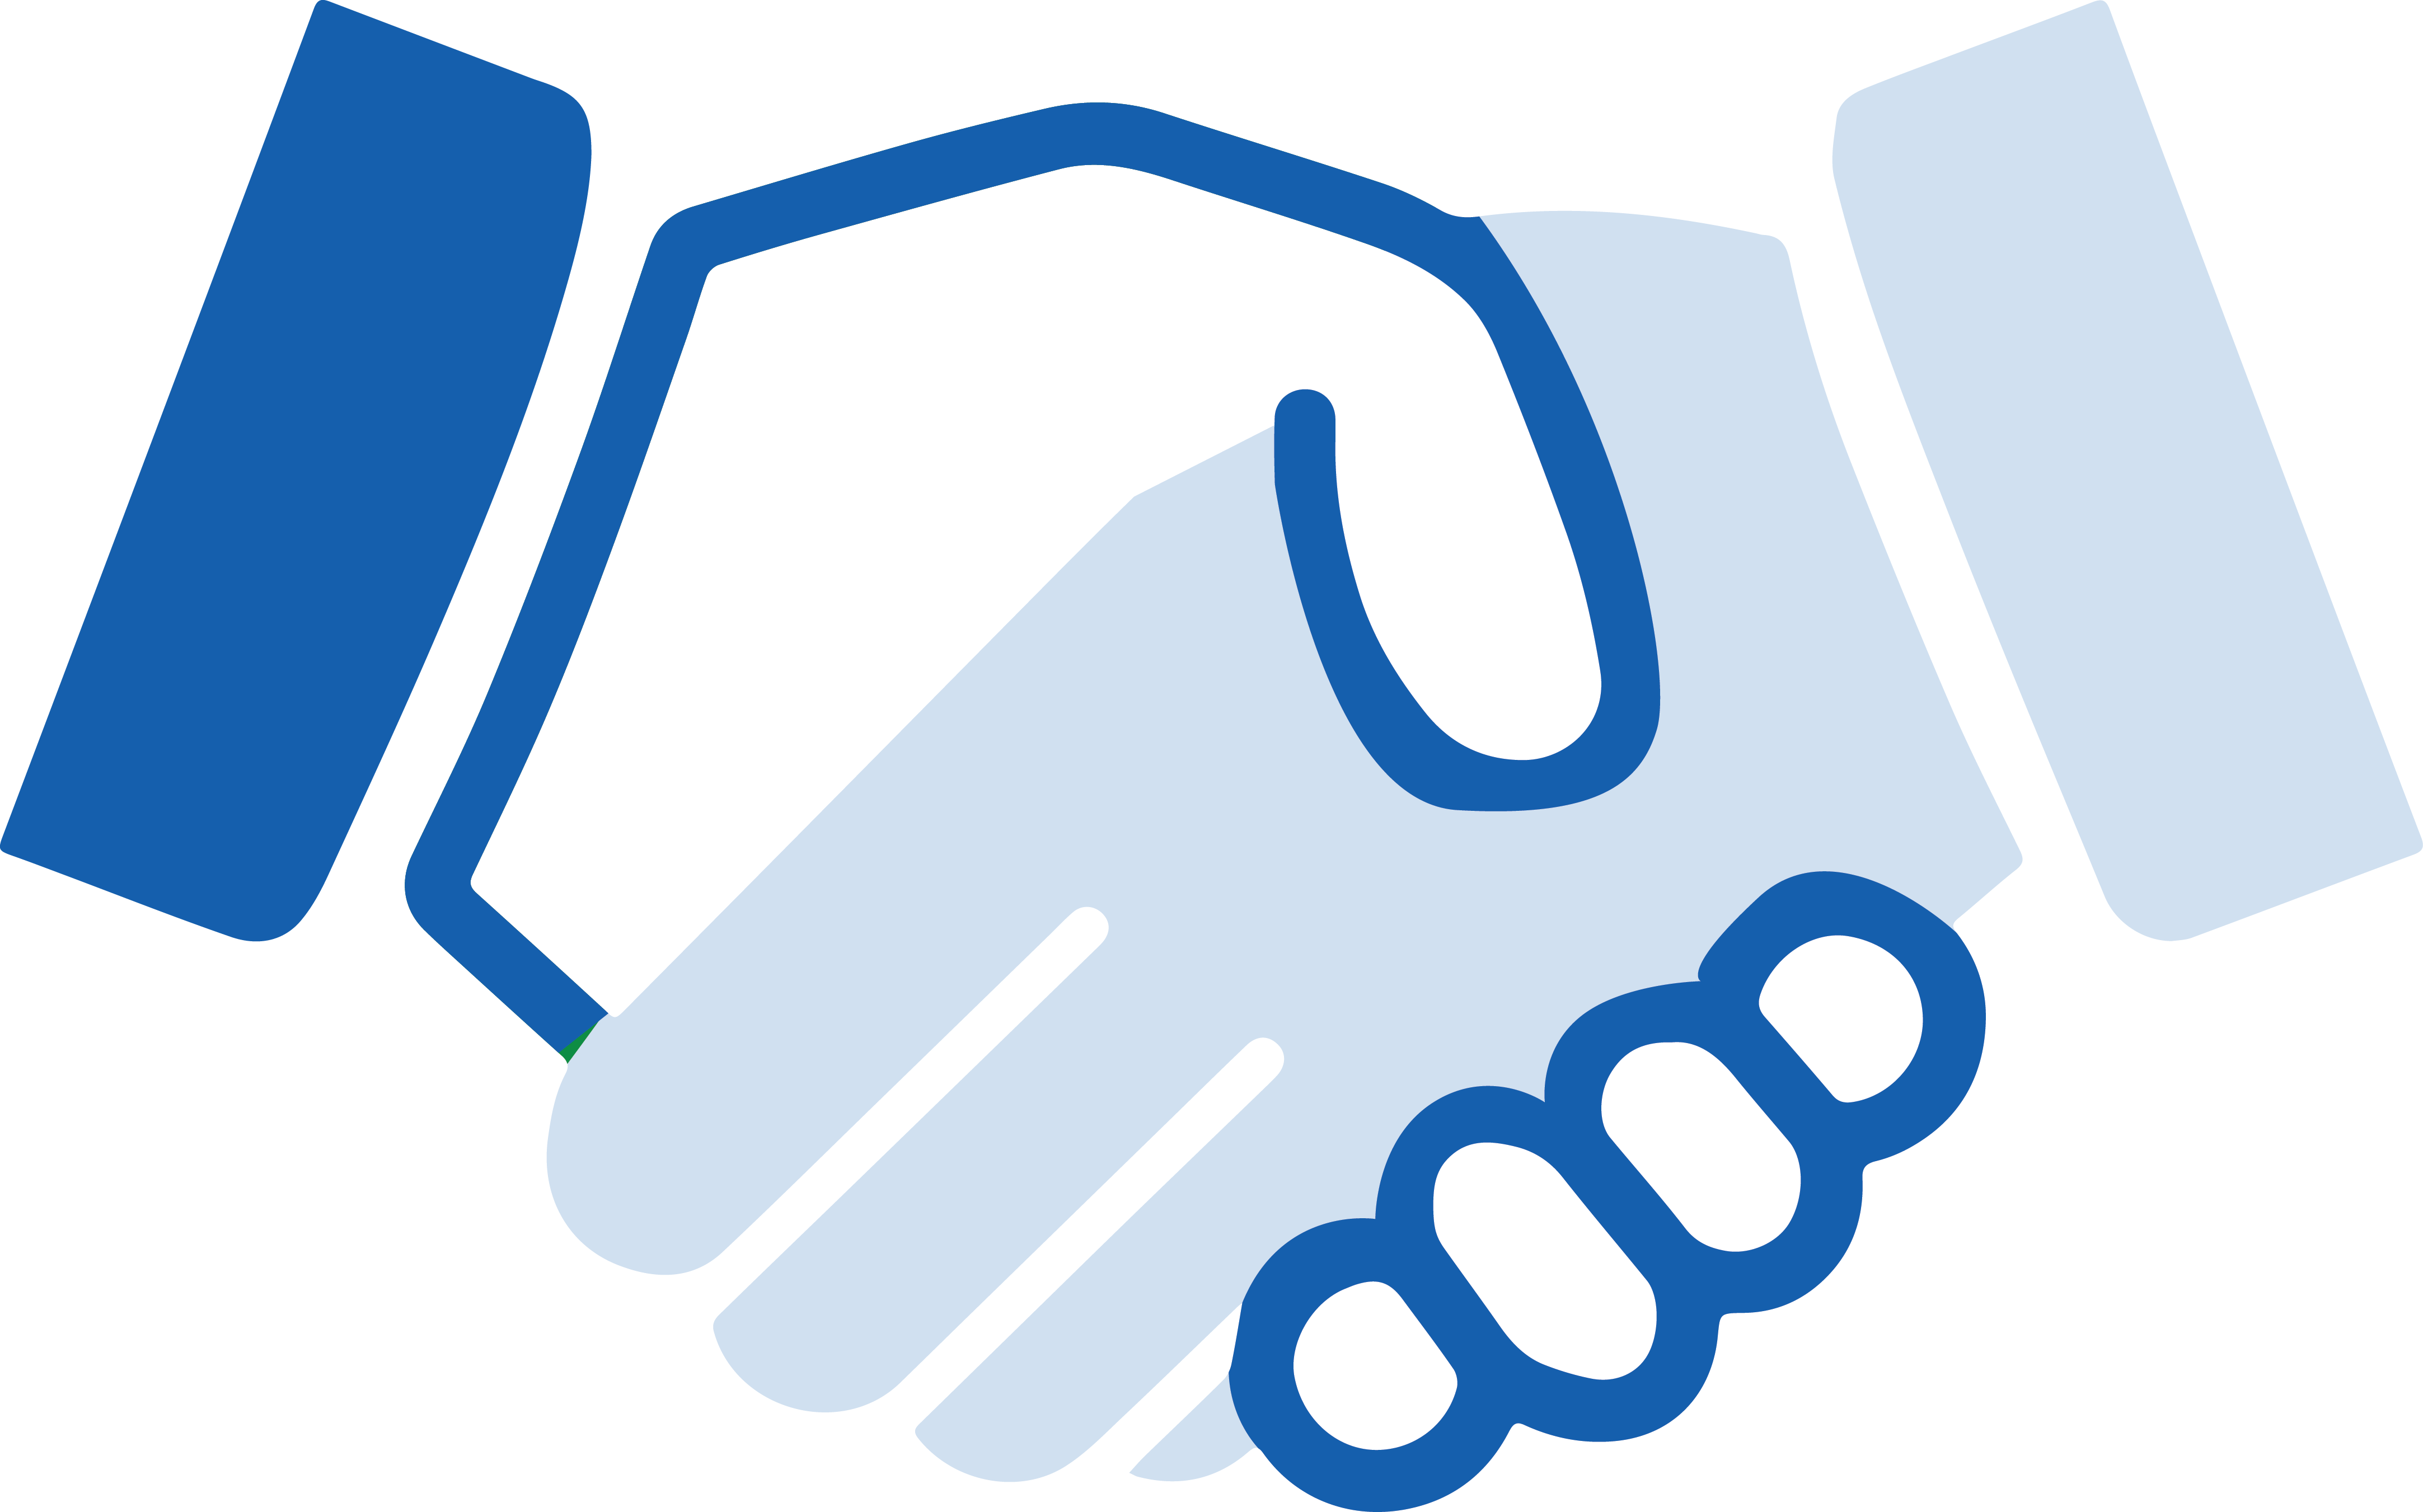 handshake clipart international cooperation